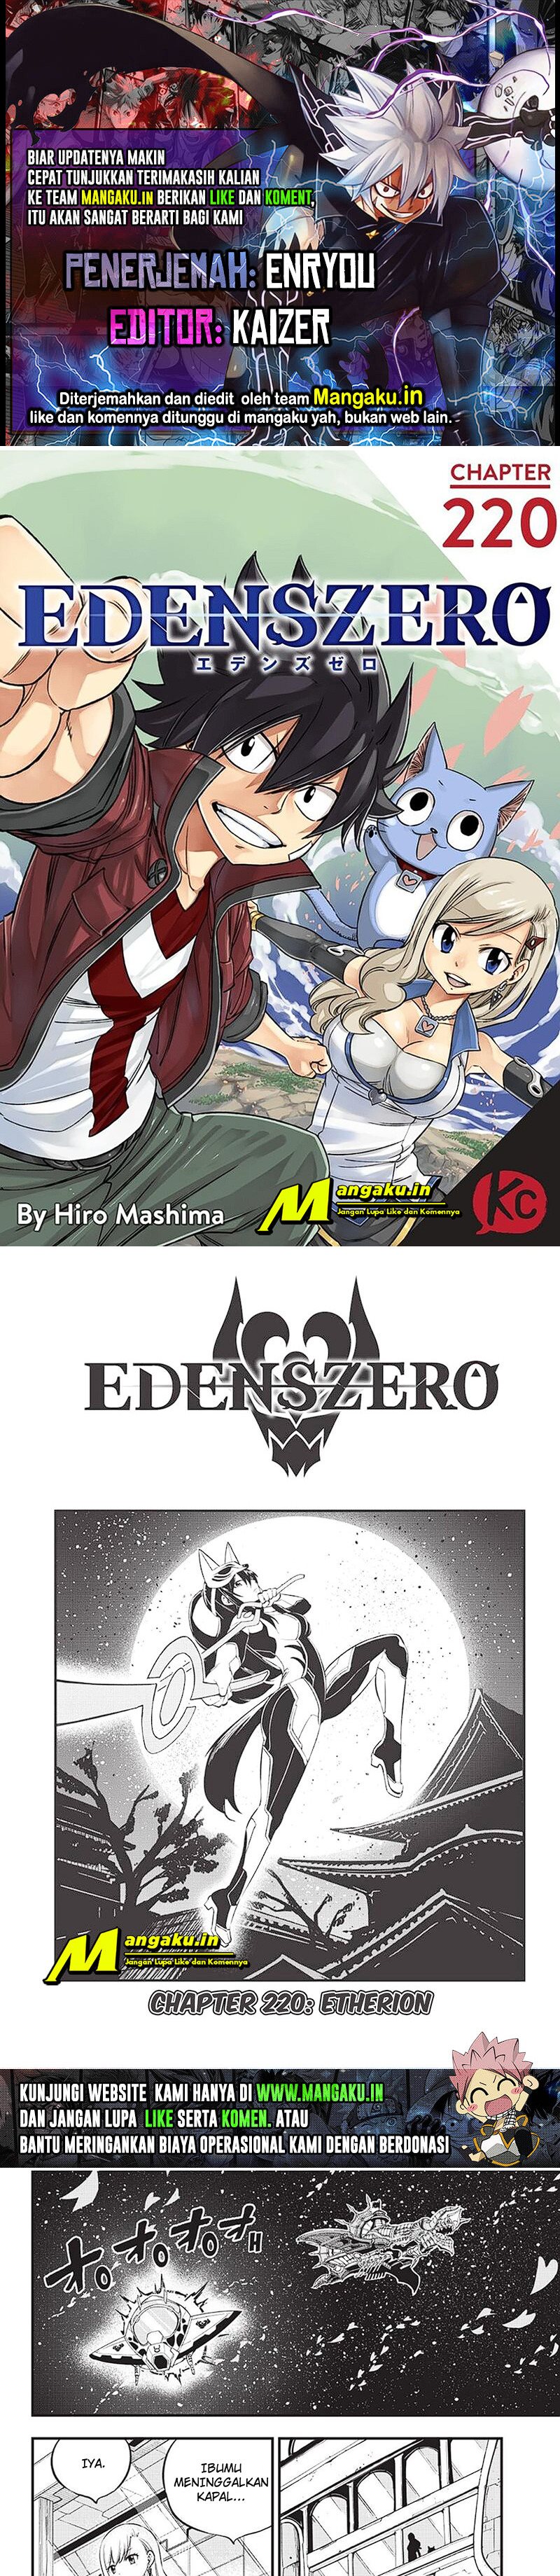 Eden's Zero Chapter 220 1